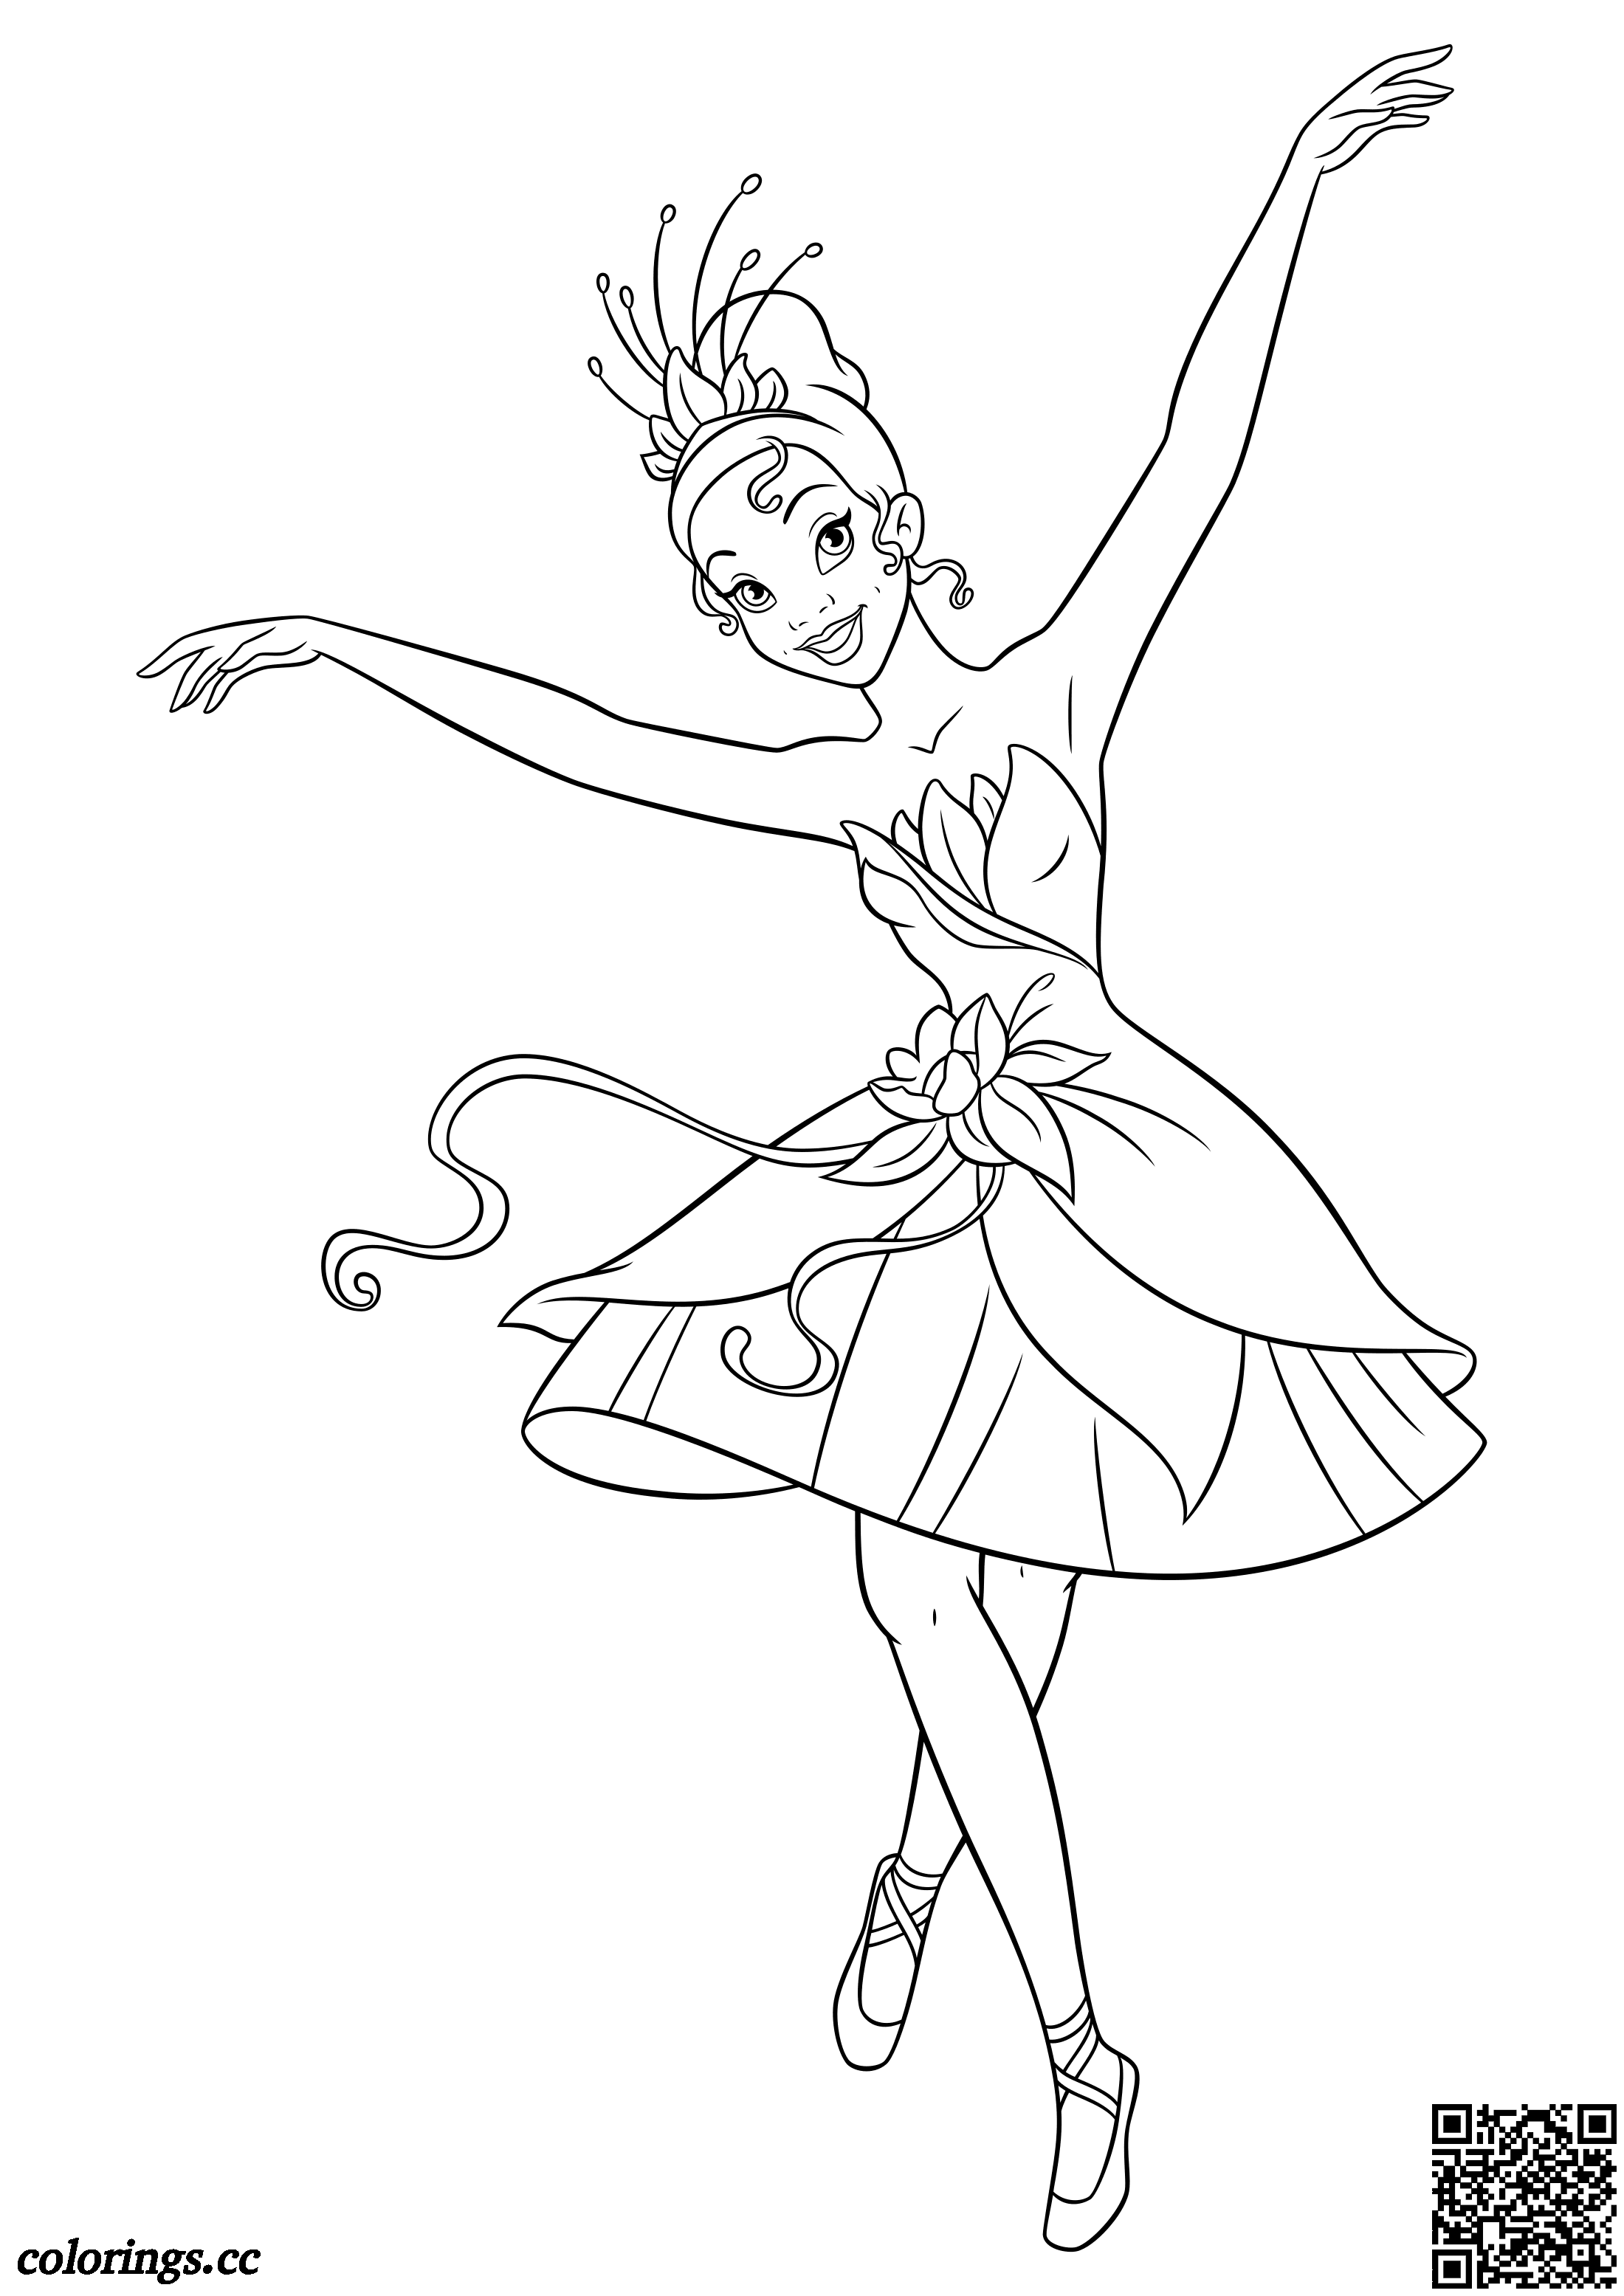 Nord Vest søster glide Tiana ballerina tegninger til farvelægning, Disney prinsesser tegninger til  farvelægning - Colorings.cc